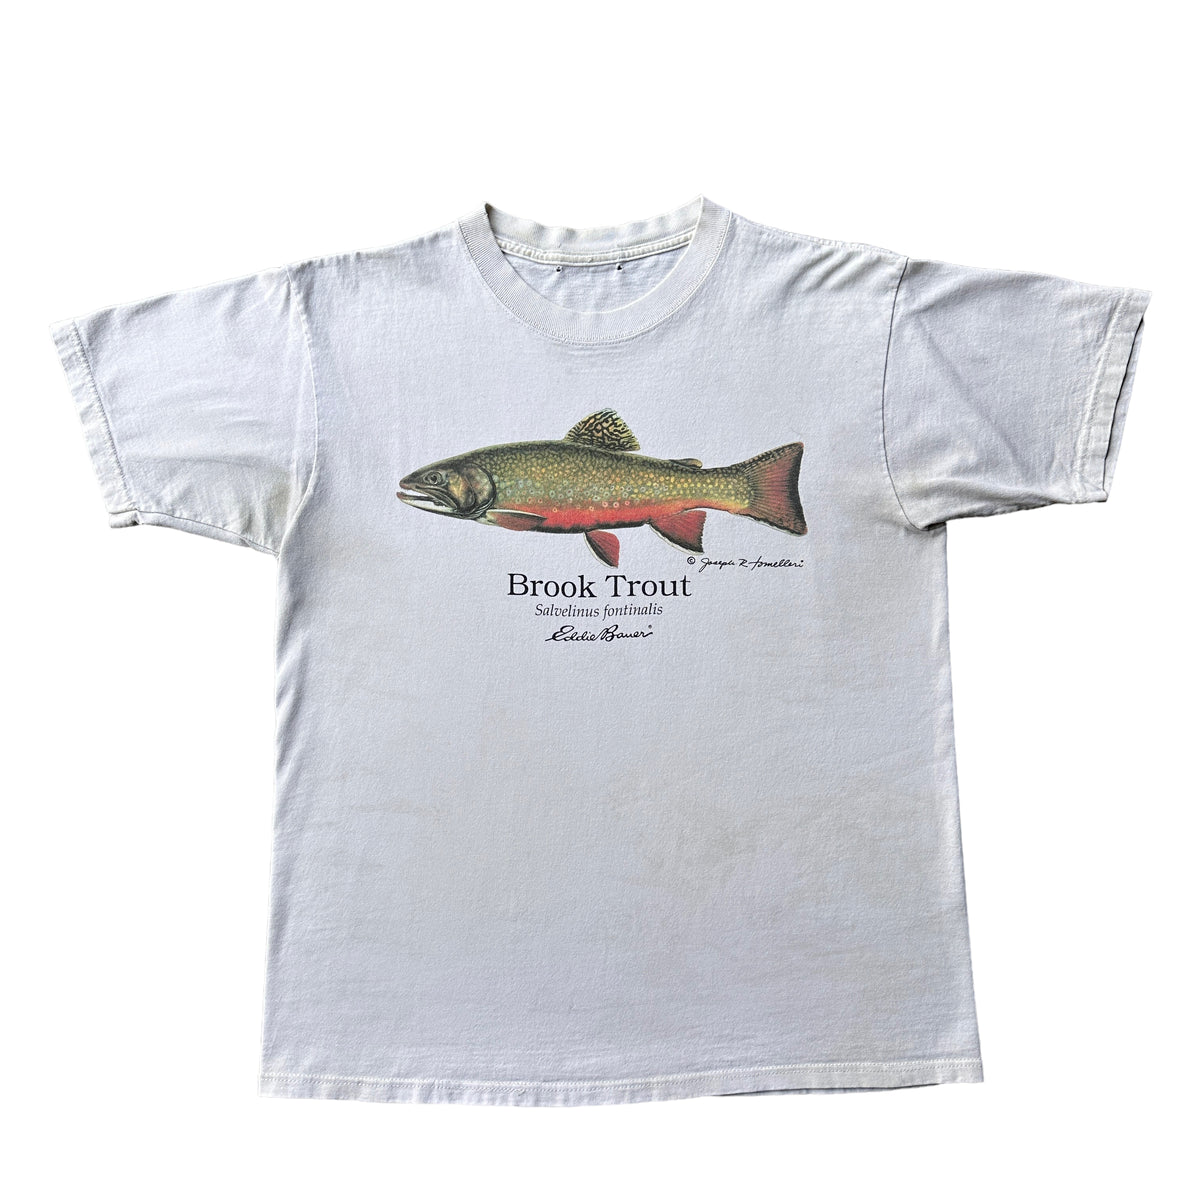 90s Eddie Bauer brook trout tee Small – Vintage Sponsor